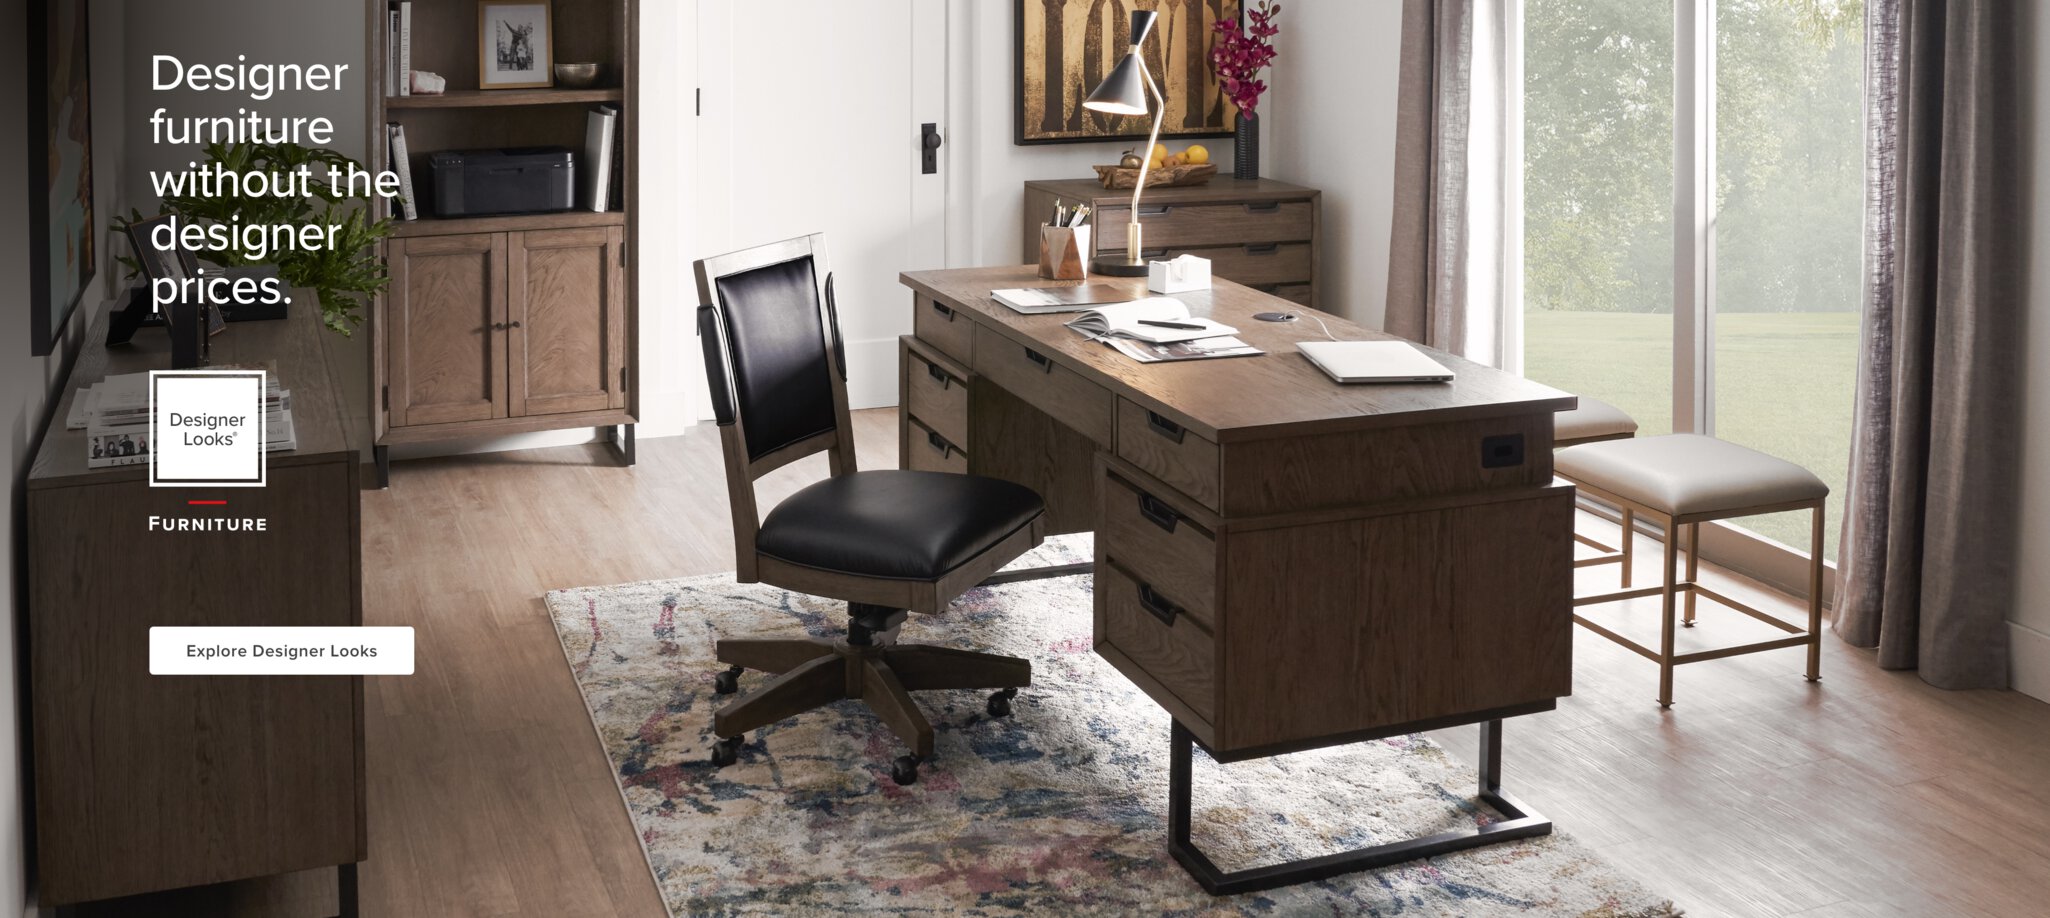 Designer Furniture without the Designer Prices. Explore Designer Looks Living Room Furniture